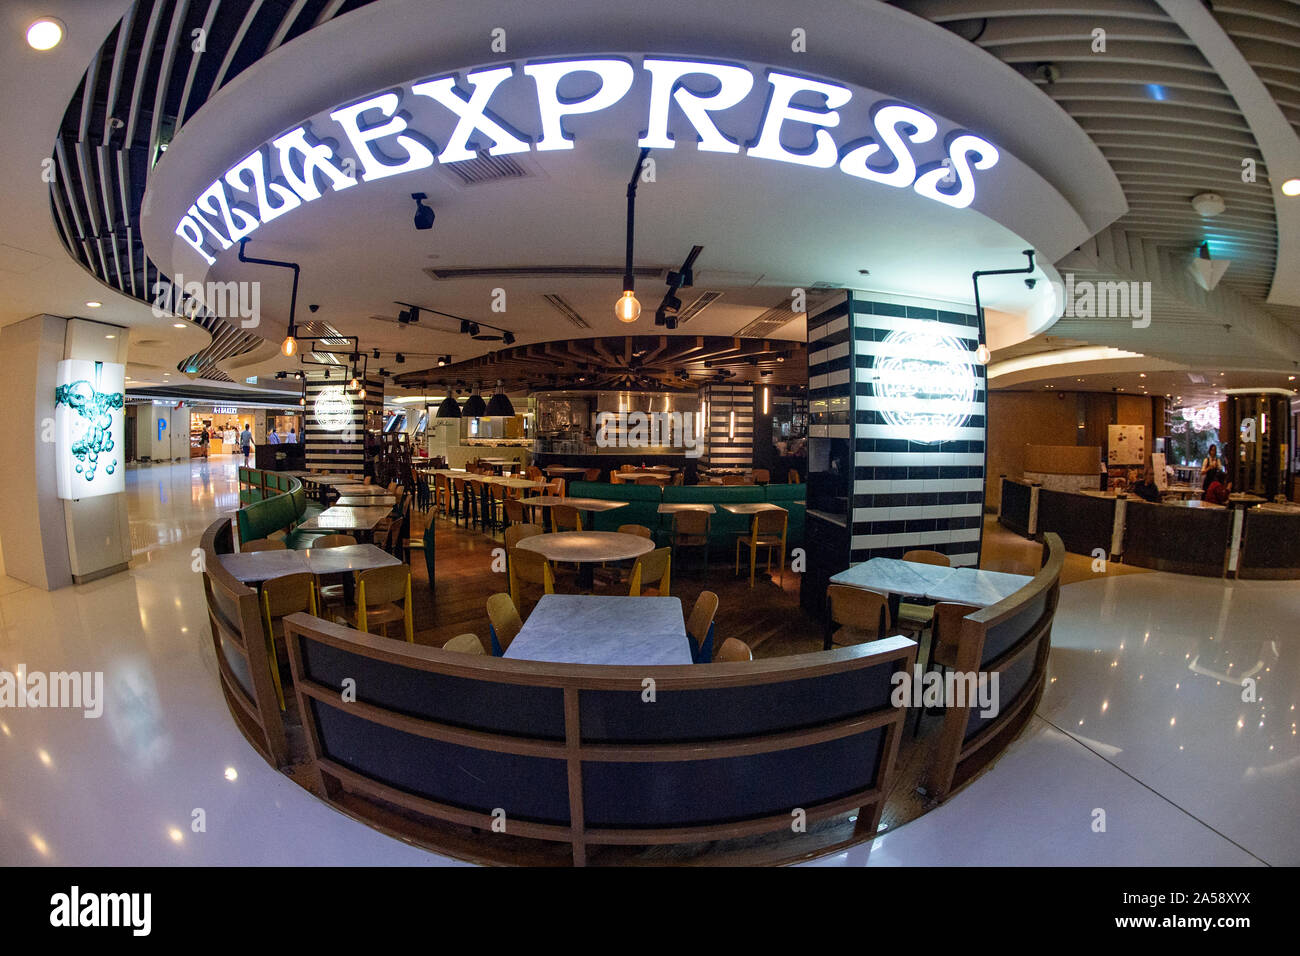 An empty pizza express restaurant in Hong Kong Stock Photo